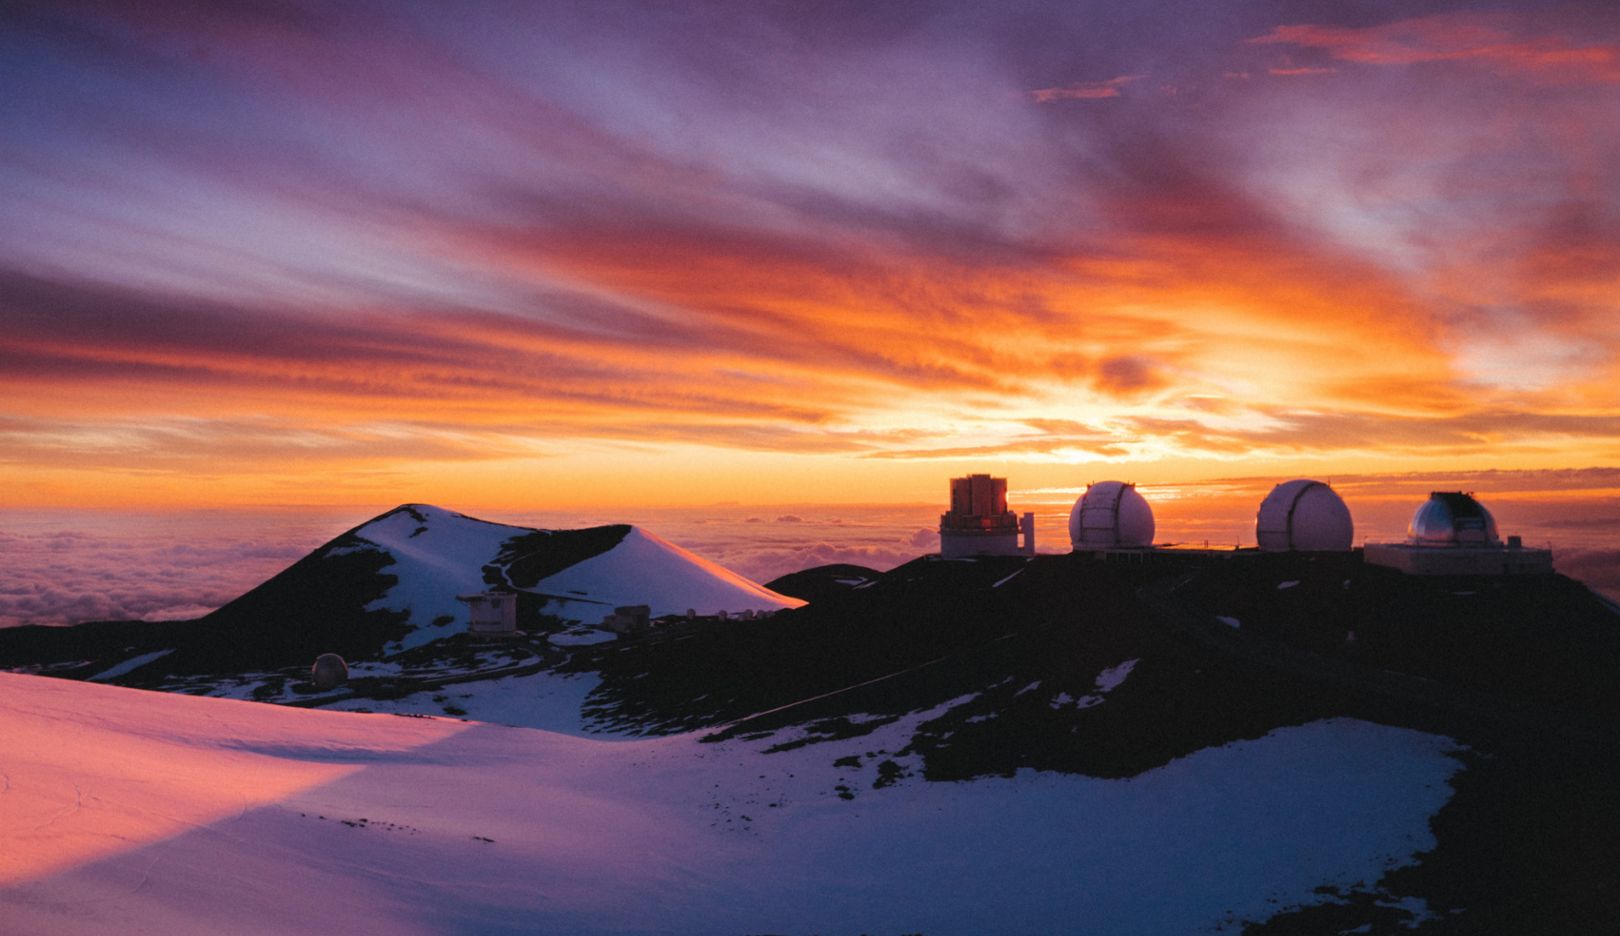 4,200メートルの火山の頂上で迎える日の出。マウナケア天文台は現在、最も重要な天文学施設の一つ。